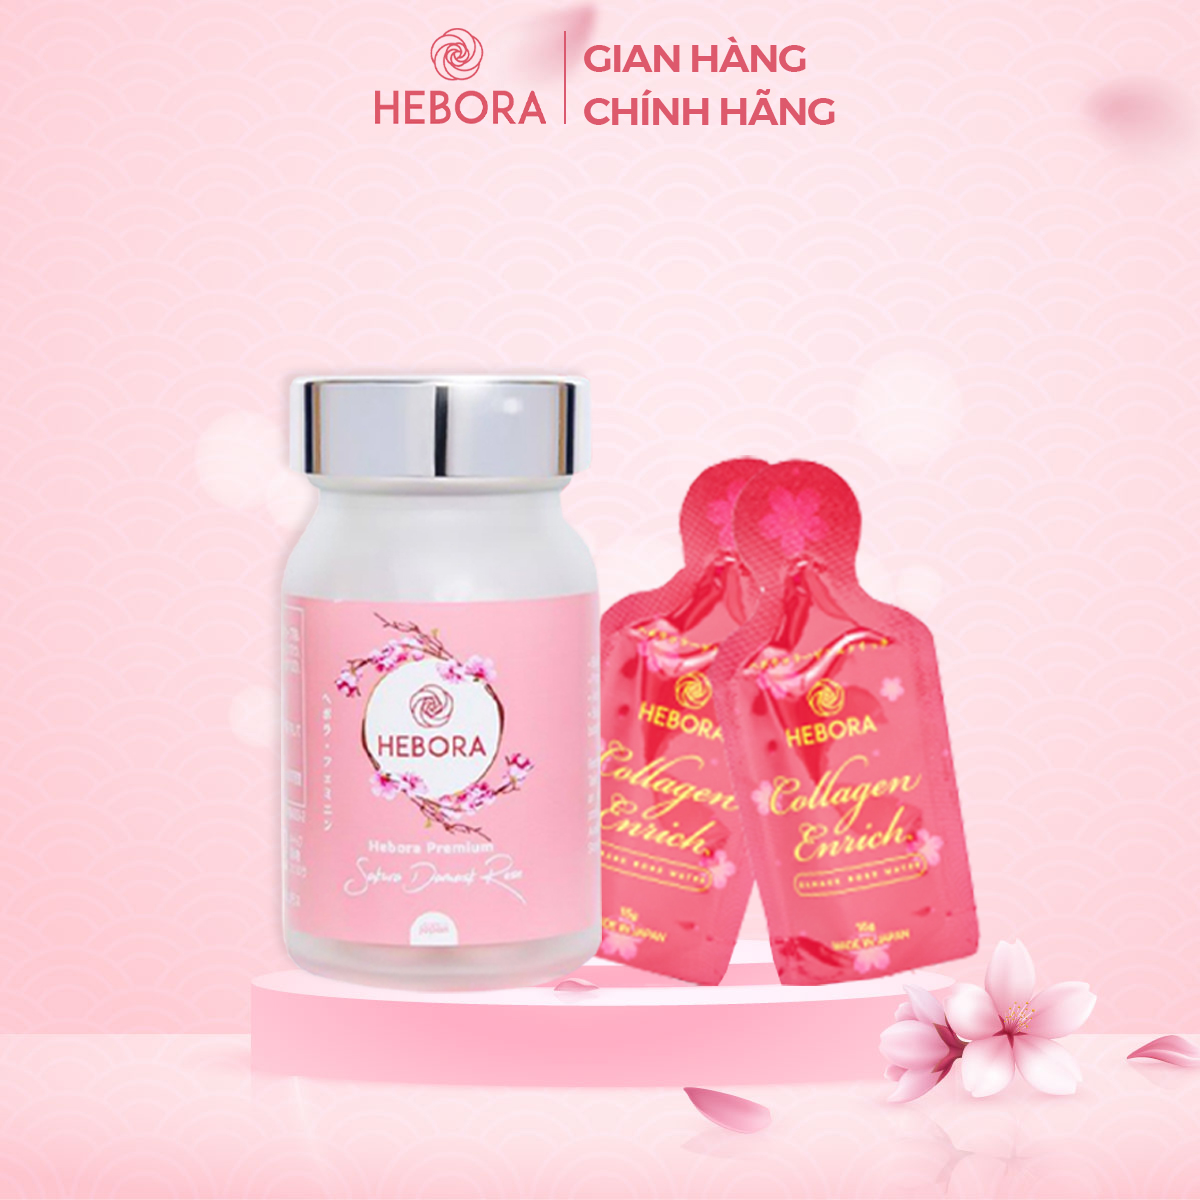 Combo Hebora Collagen Enrich và viên uống tỏa hương Hebora Premium Sakura chính hãng thumbnail